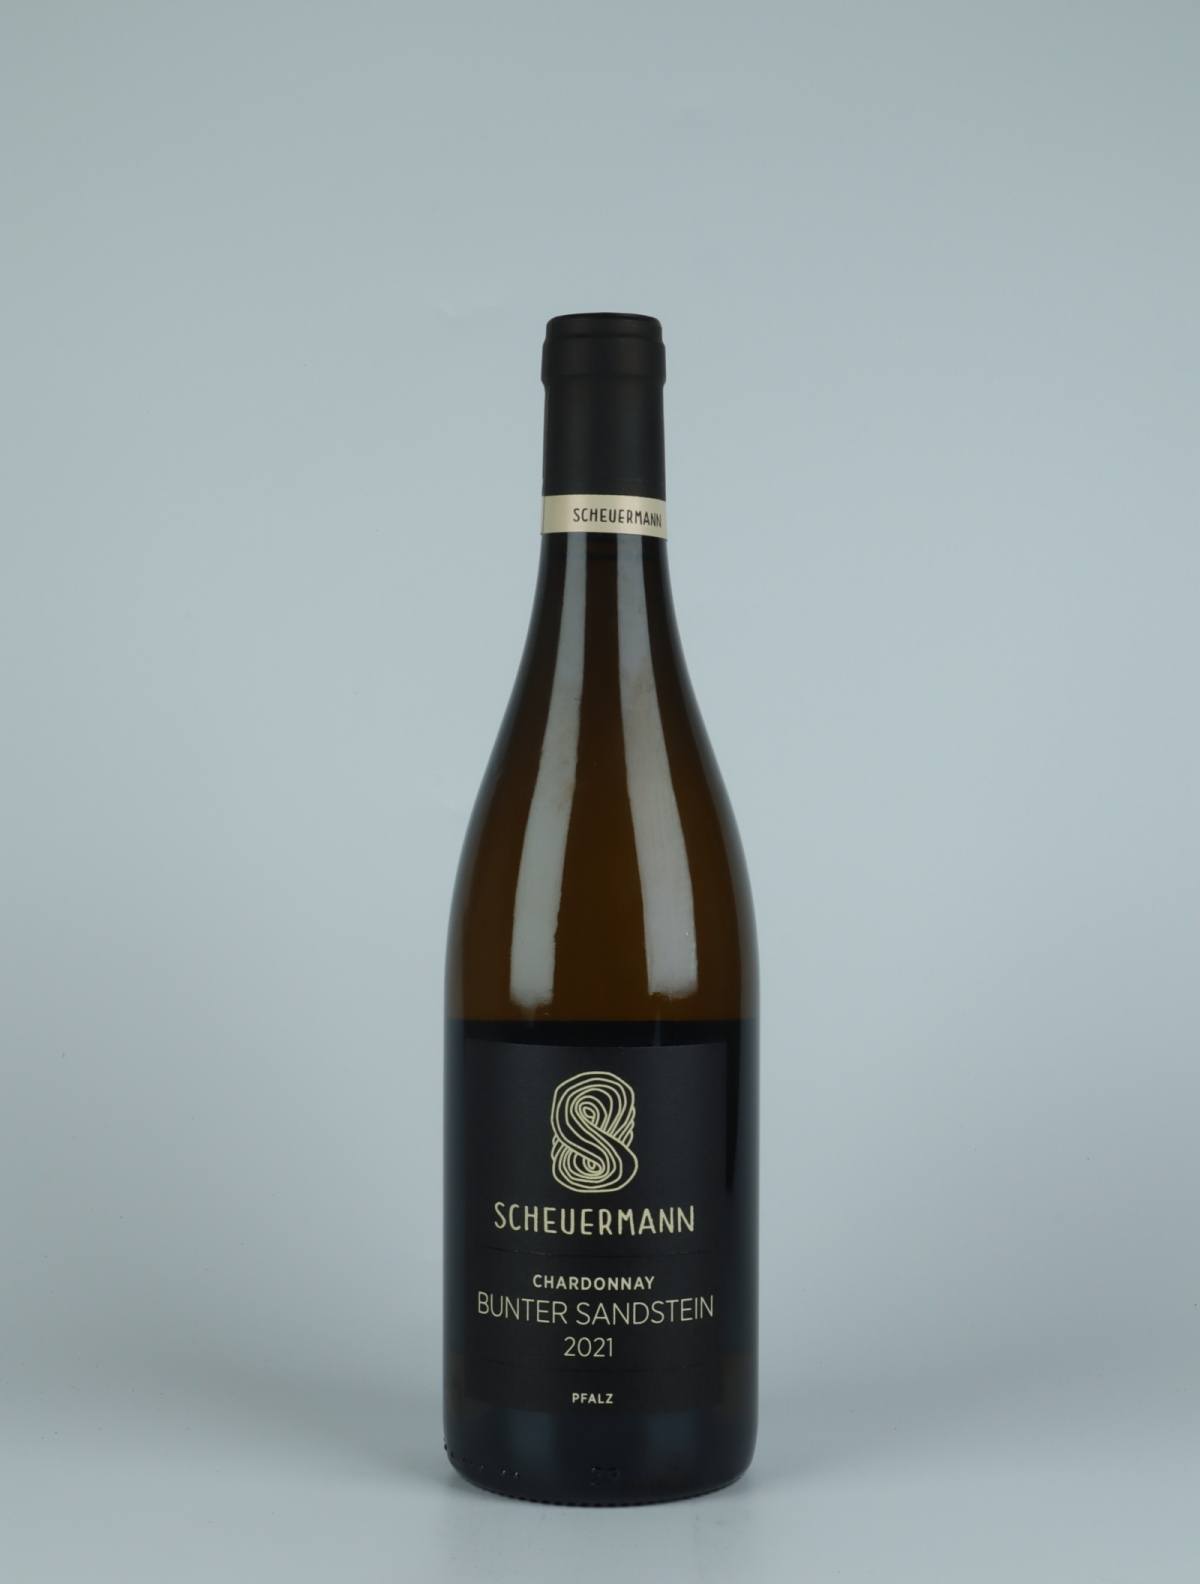 En flaske 2021 Chardonnay Bunter Sandstein Hvidvin fra Weingut Scheuermann, Pfalz i Tyskland